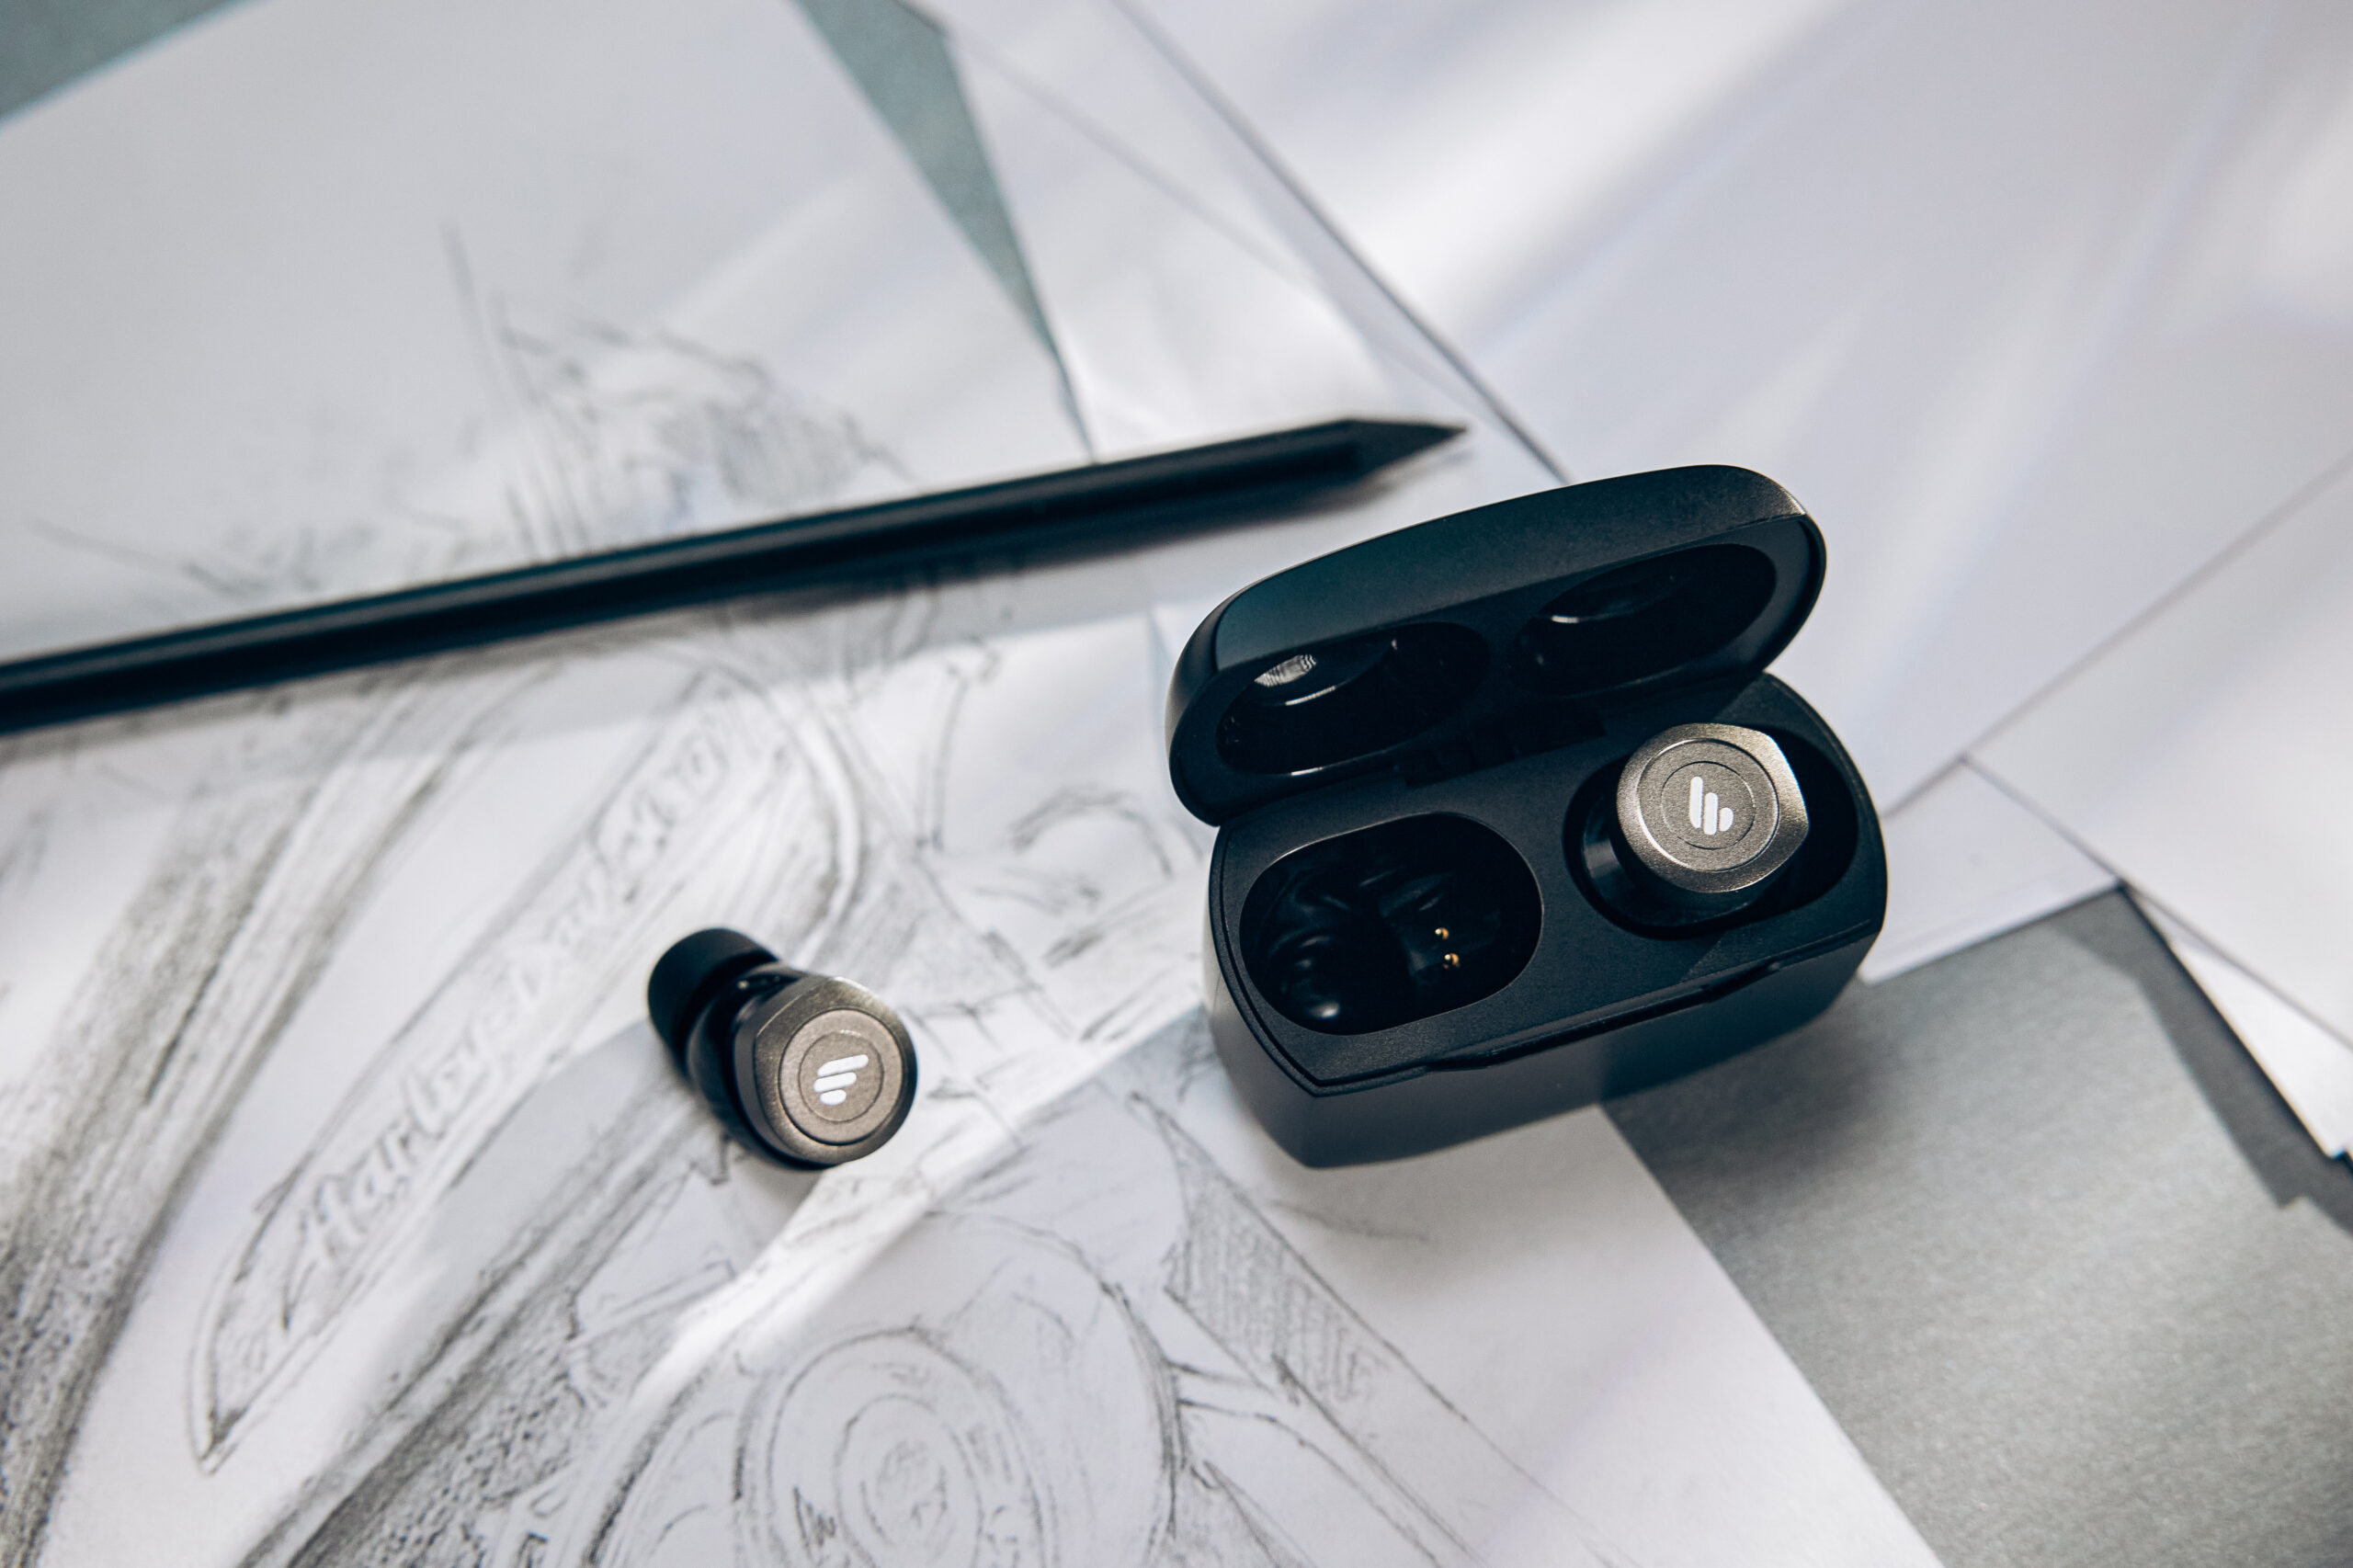 Gice Edifier’s True Wireless In-Ear Headphones as a gift